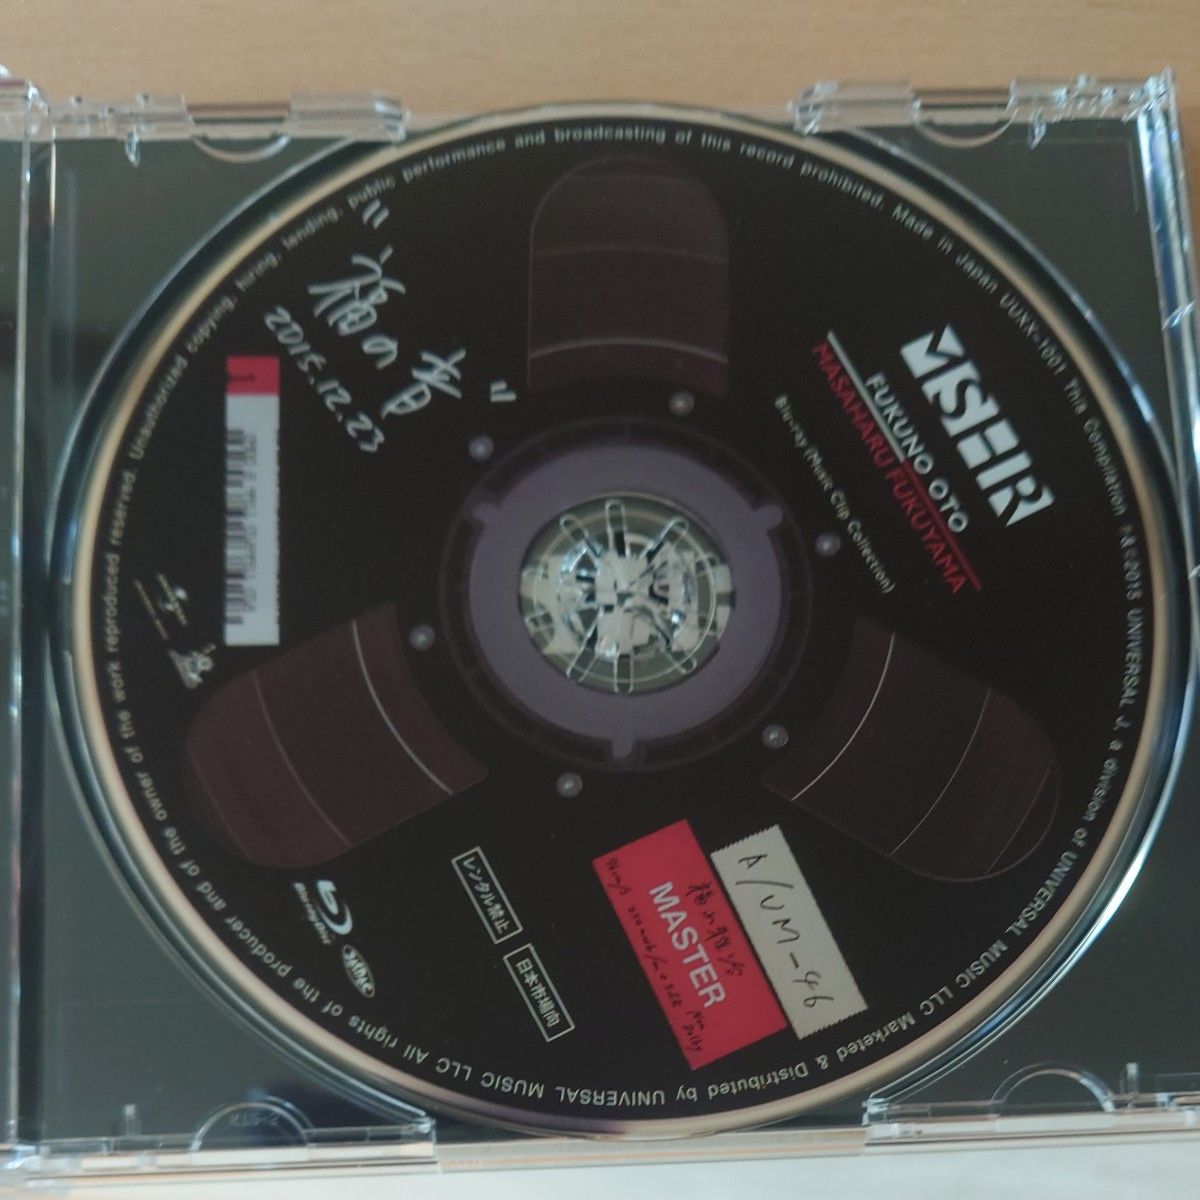 福の音 (完全初回生産限定盤) (3CD+Blu-ray+スペシャルタオル+特製三方背ケース仕様)